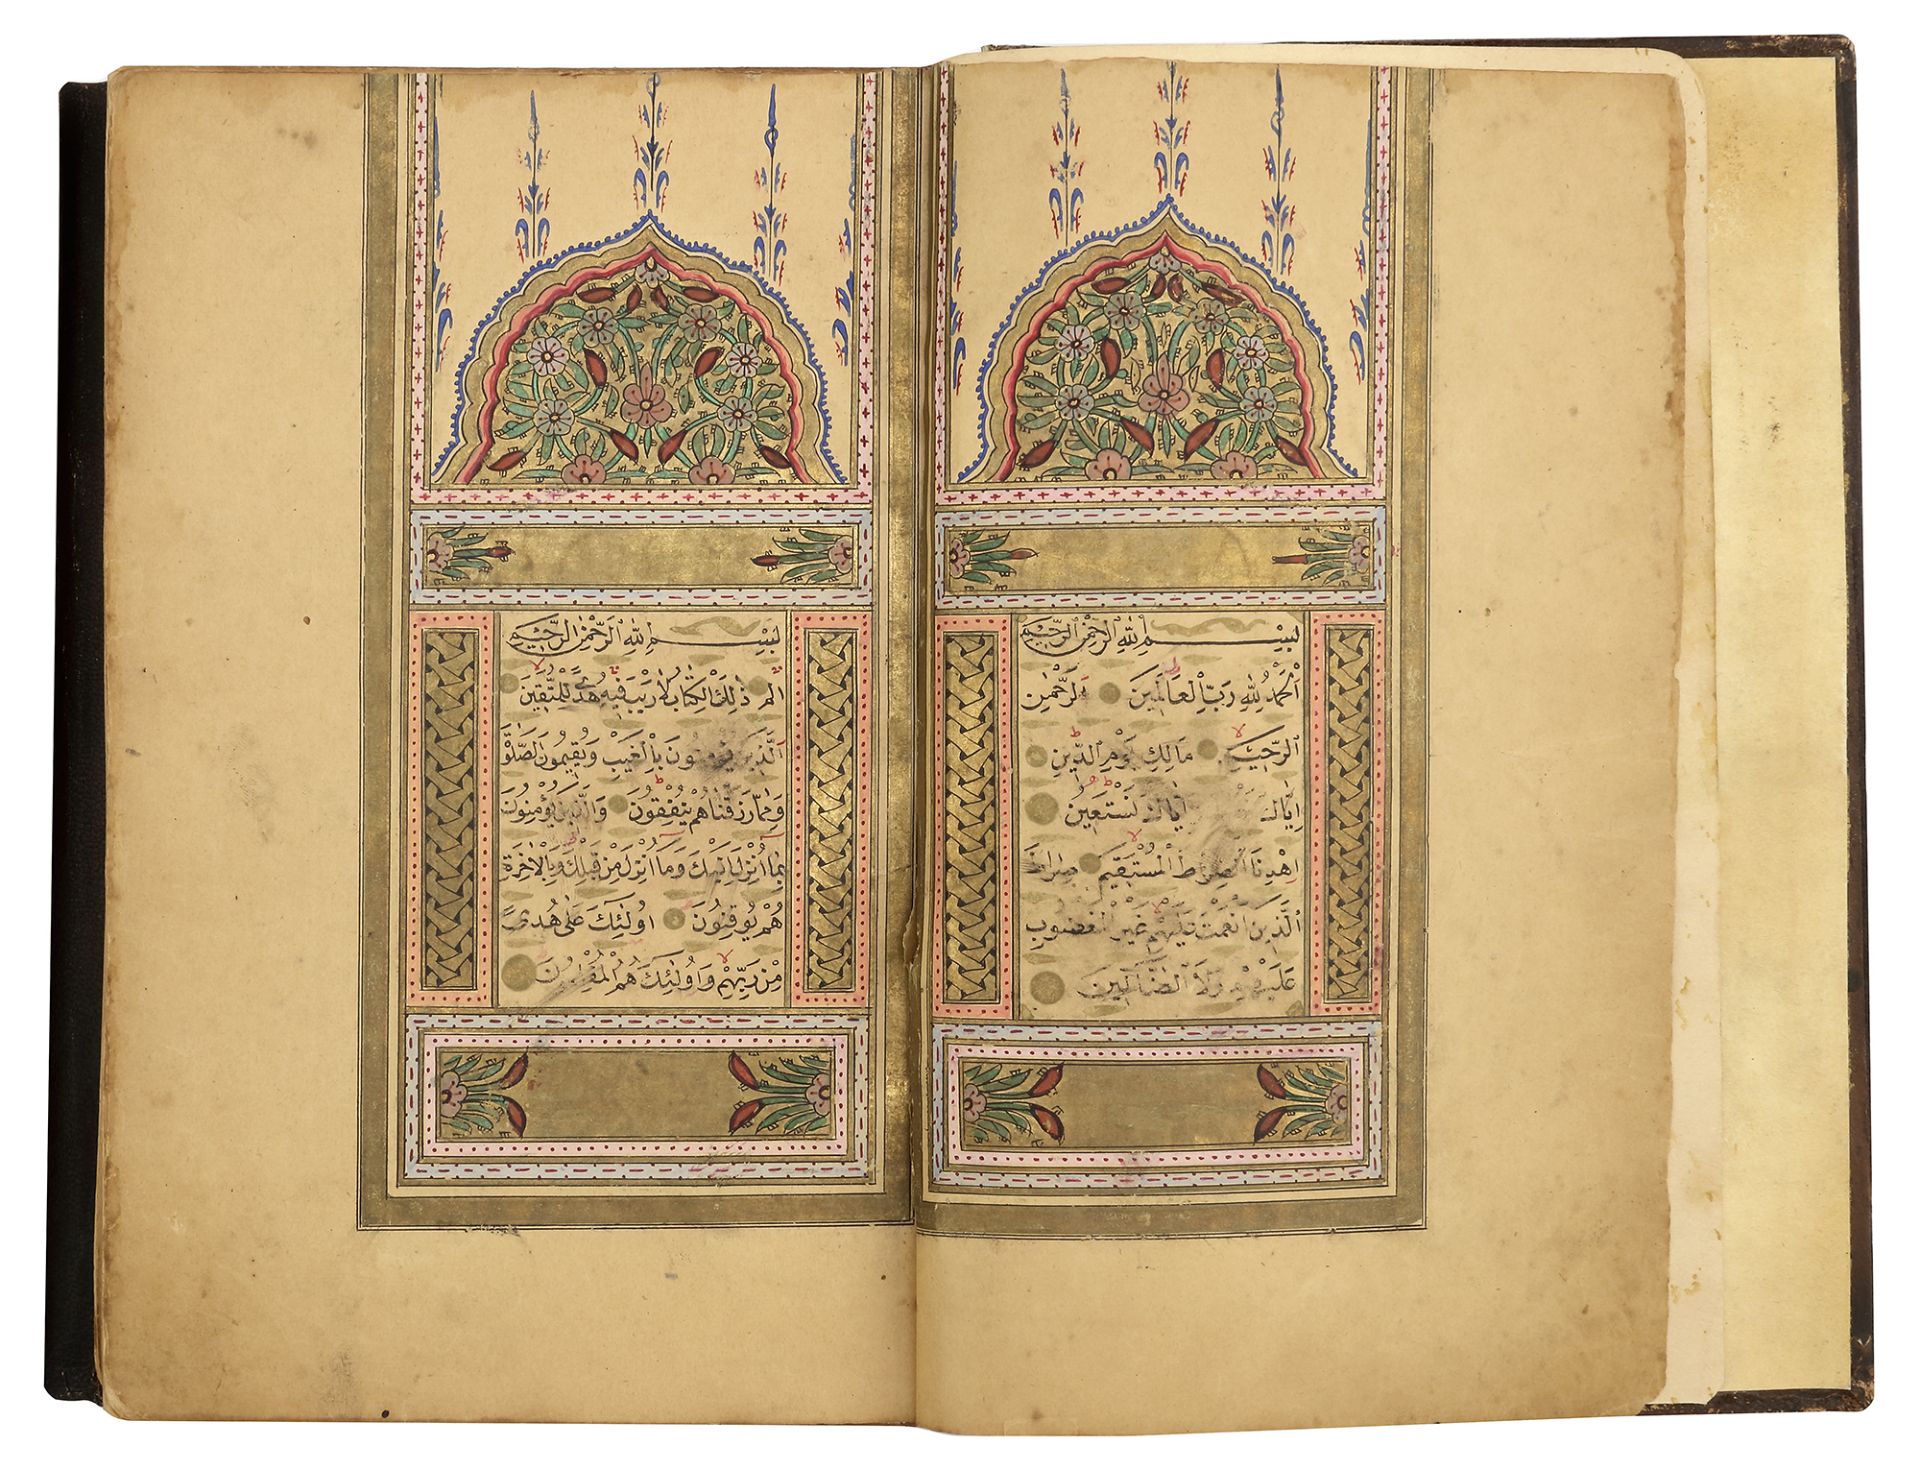 A FINE OTTOMAN QURAN, TURKEY, EDIRNE, WRITTEN BY HUSSEIN AL-HUSNA IBN AHMED AL-ADRUNI, DATED 1287 AH